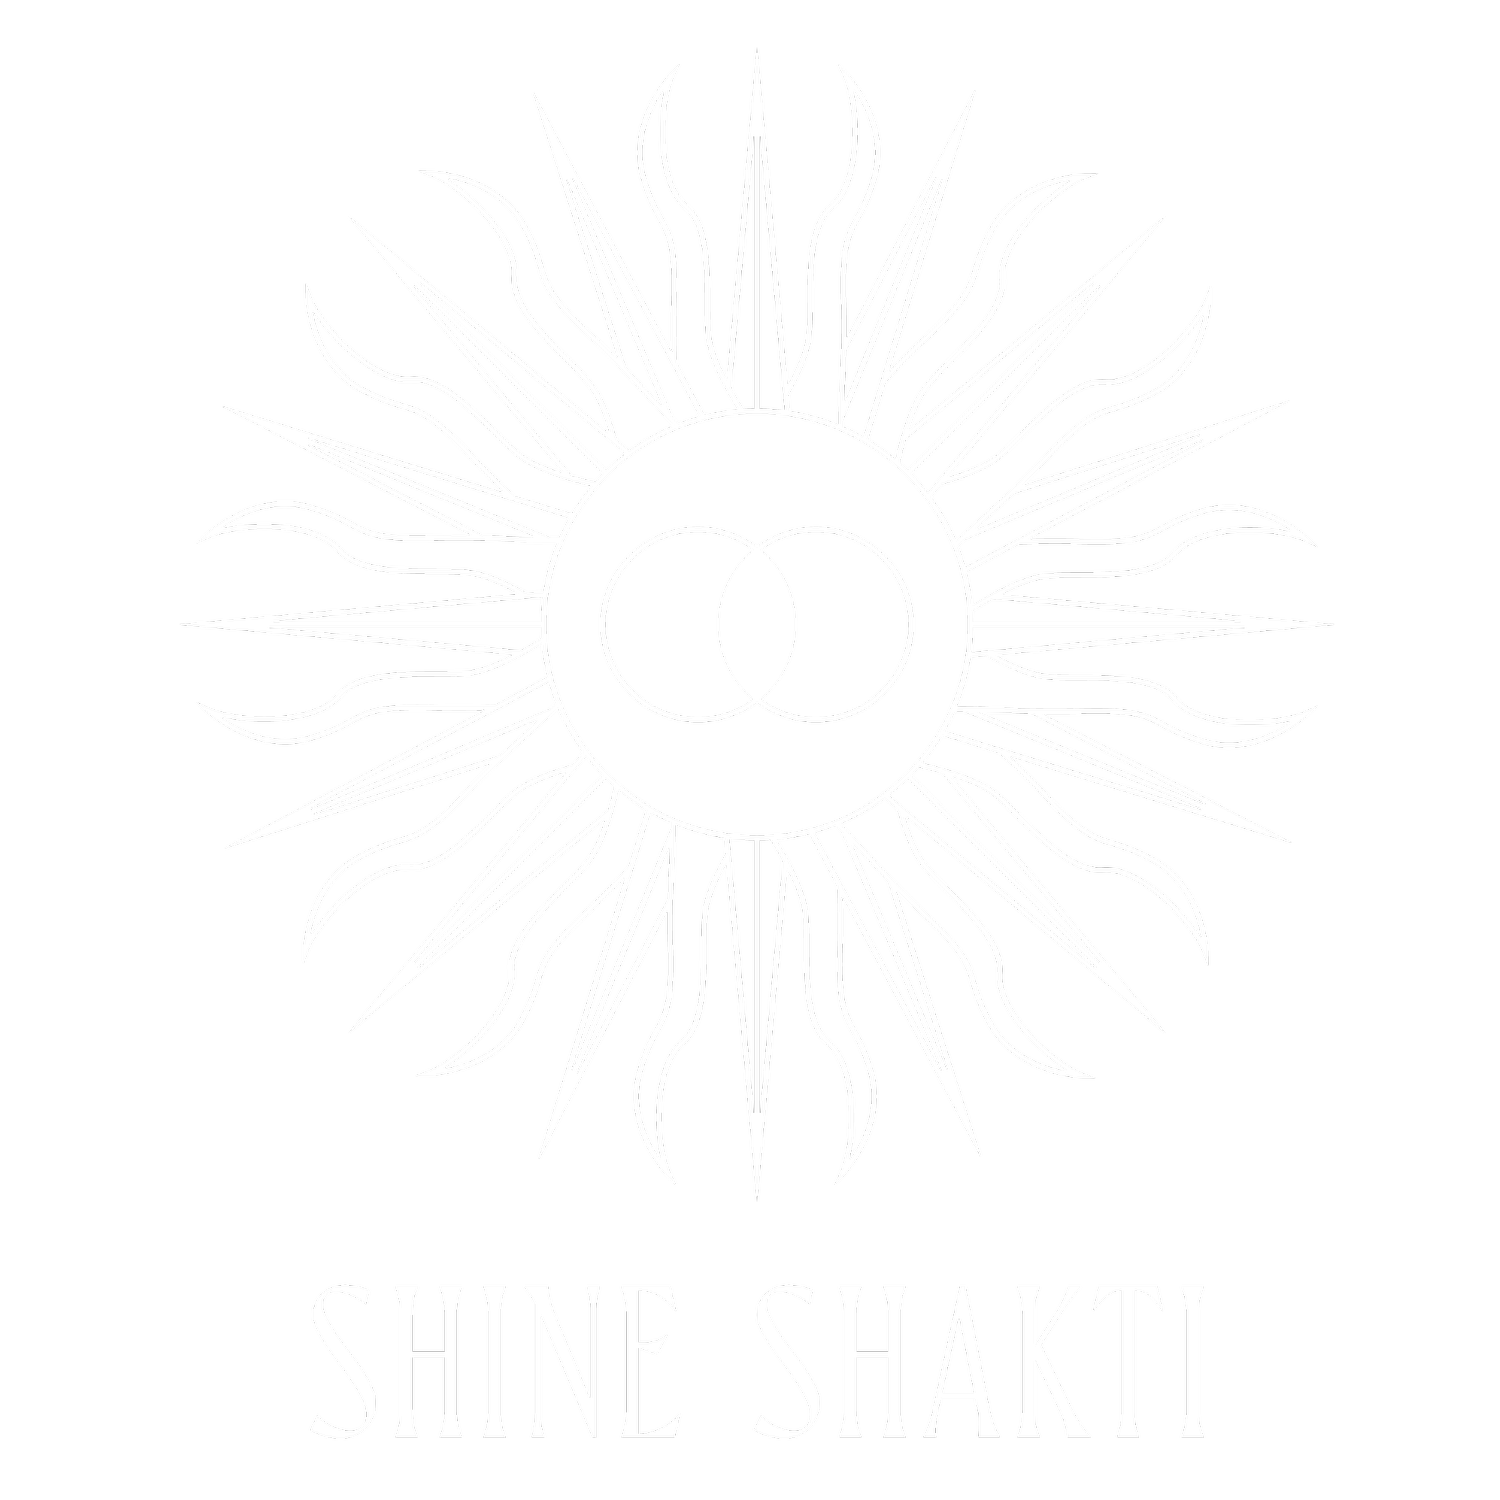 Shine Shakti